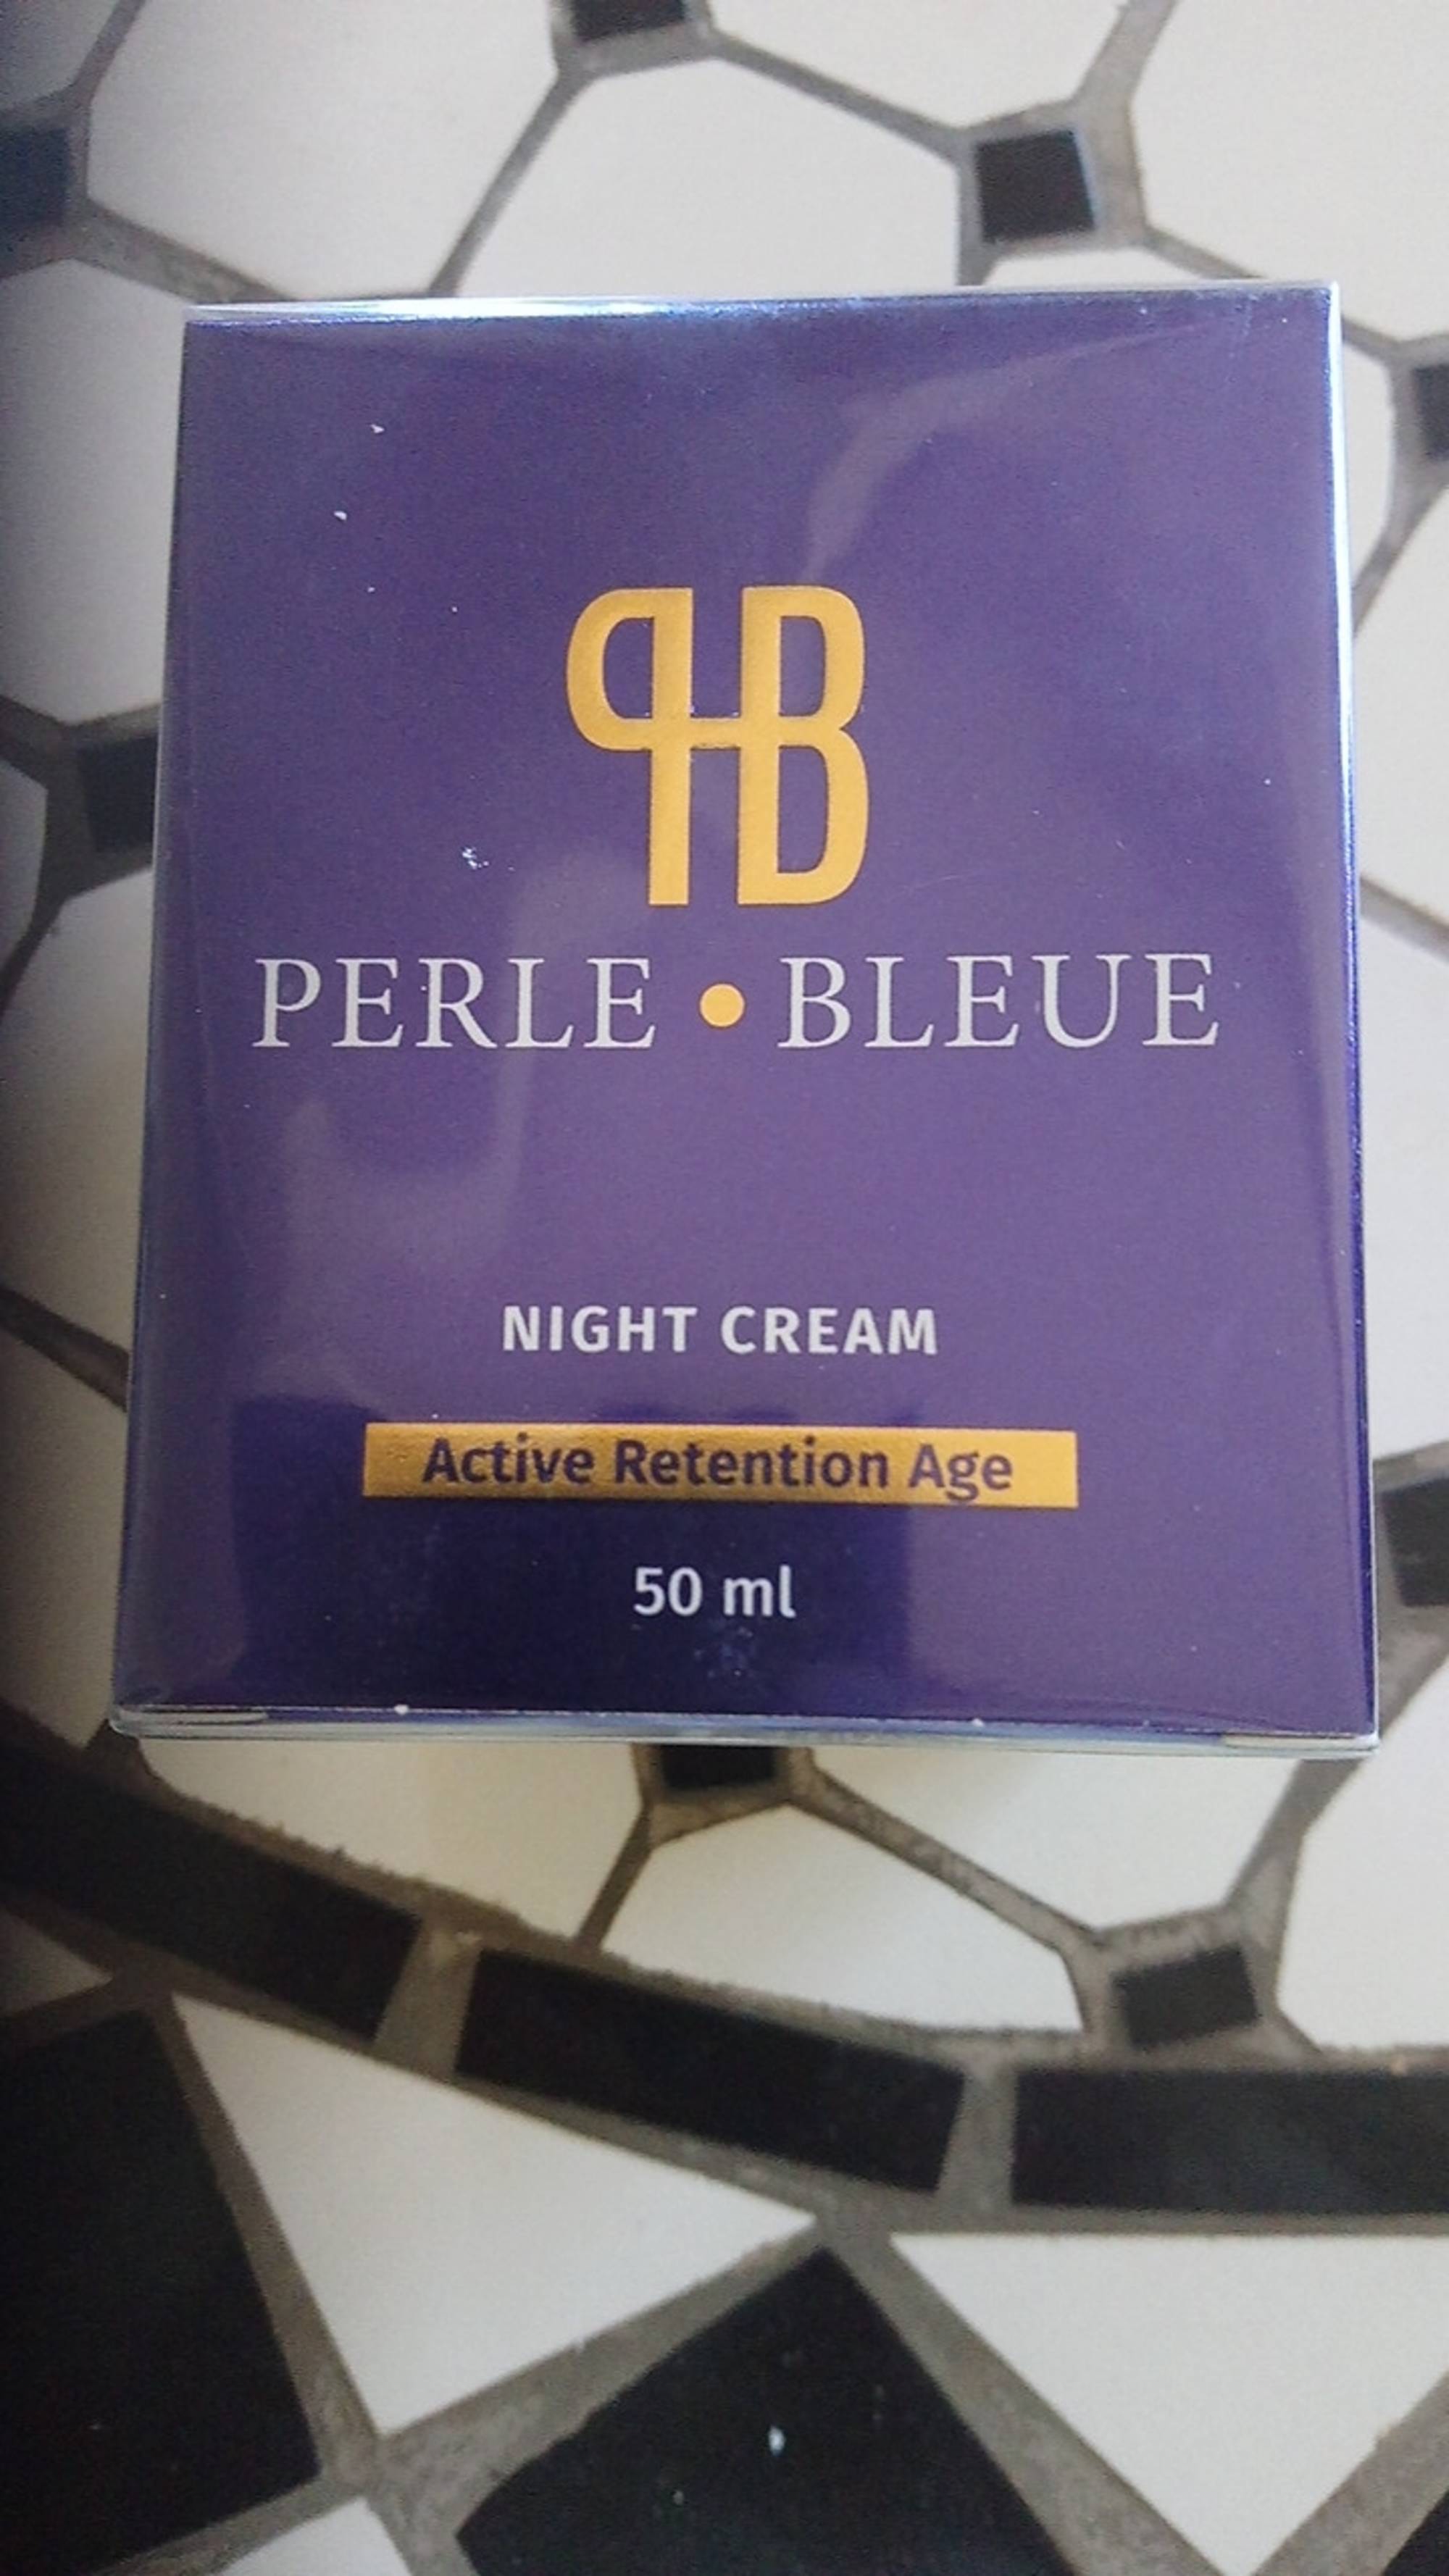 PERLE BLEUE - Perle bleue - Night cream active retention age